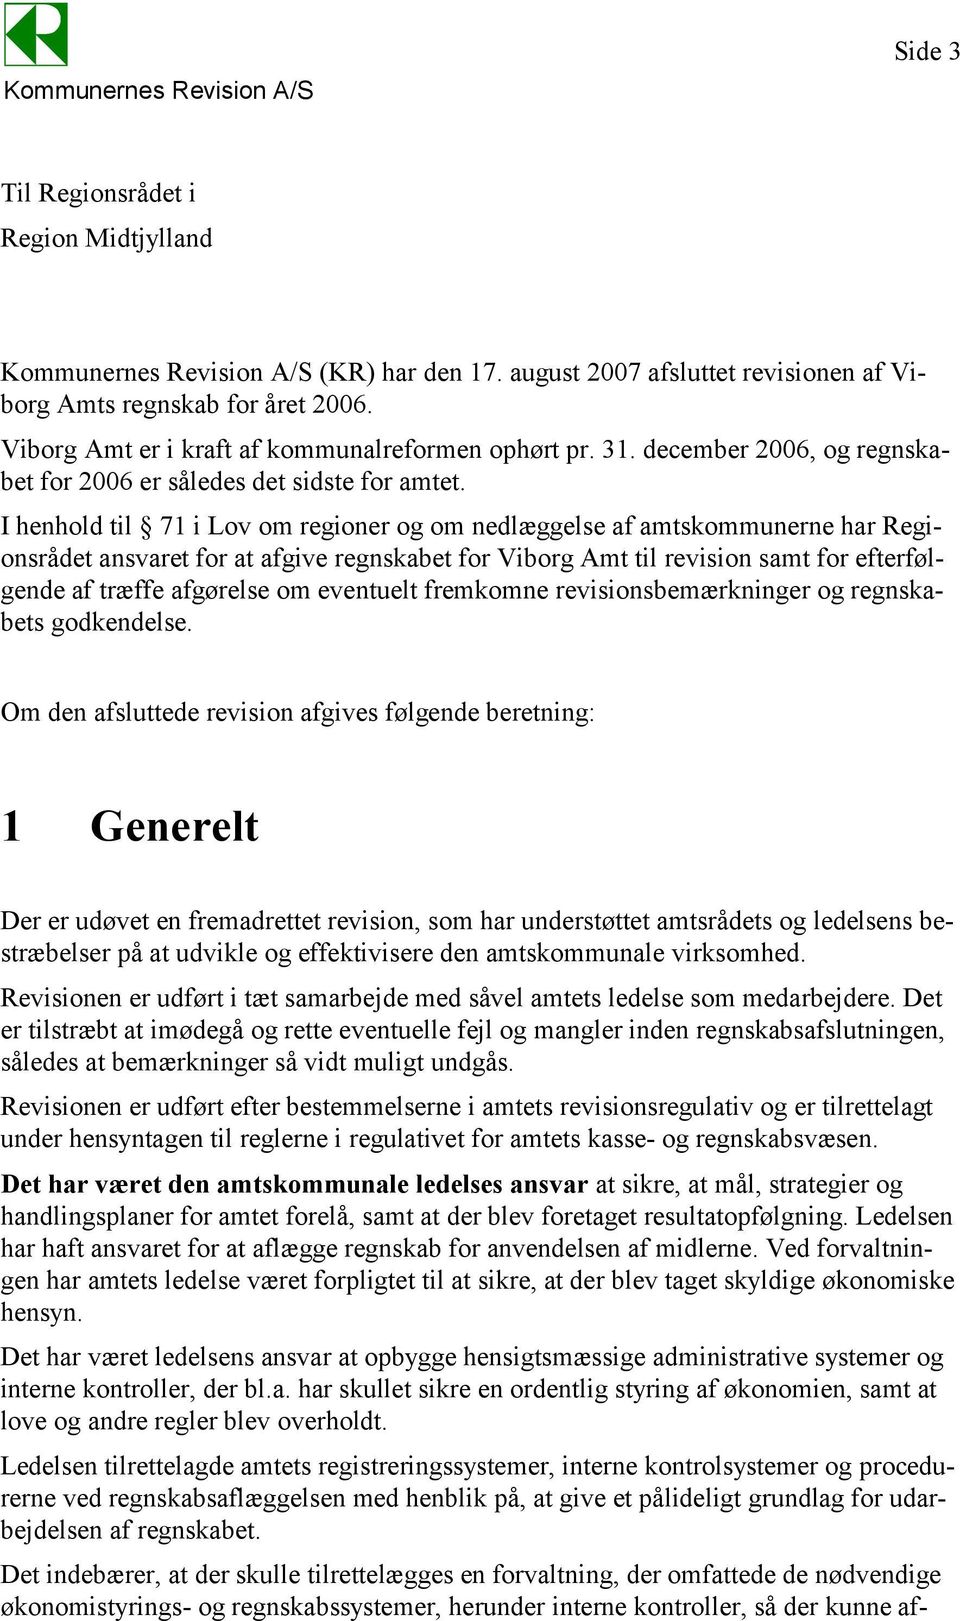 I henhold til 71 i Lov om regioner og om nedlæggelse af amtskommunerne har Regionsrådet ansvaret for at afgive regnskabet for Viborg Amt til revision samt for efterfølgende af træffe afgørelse om